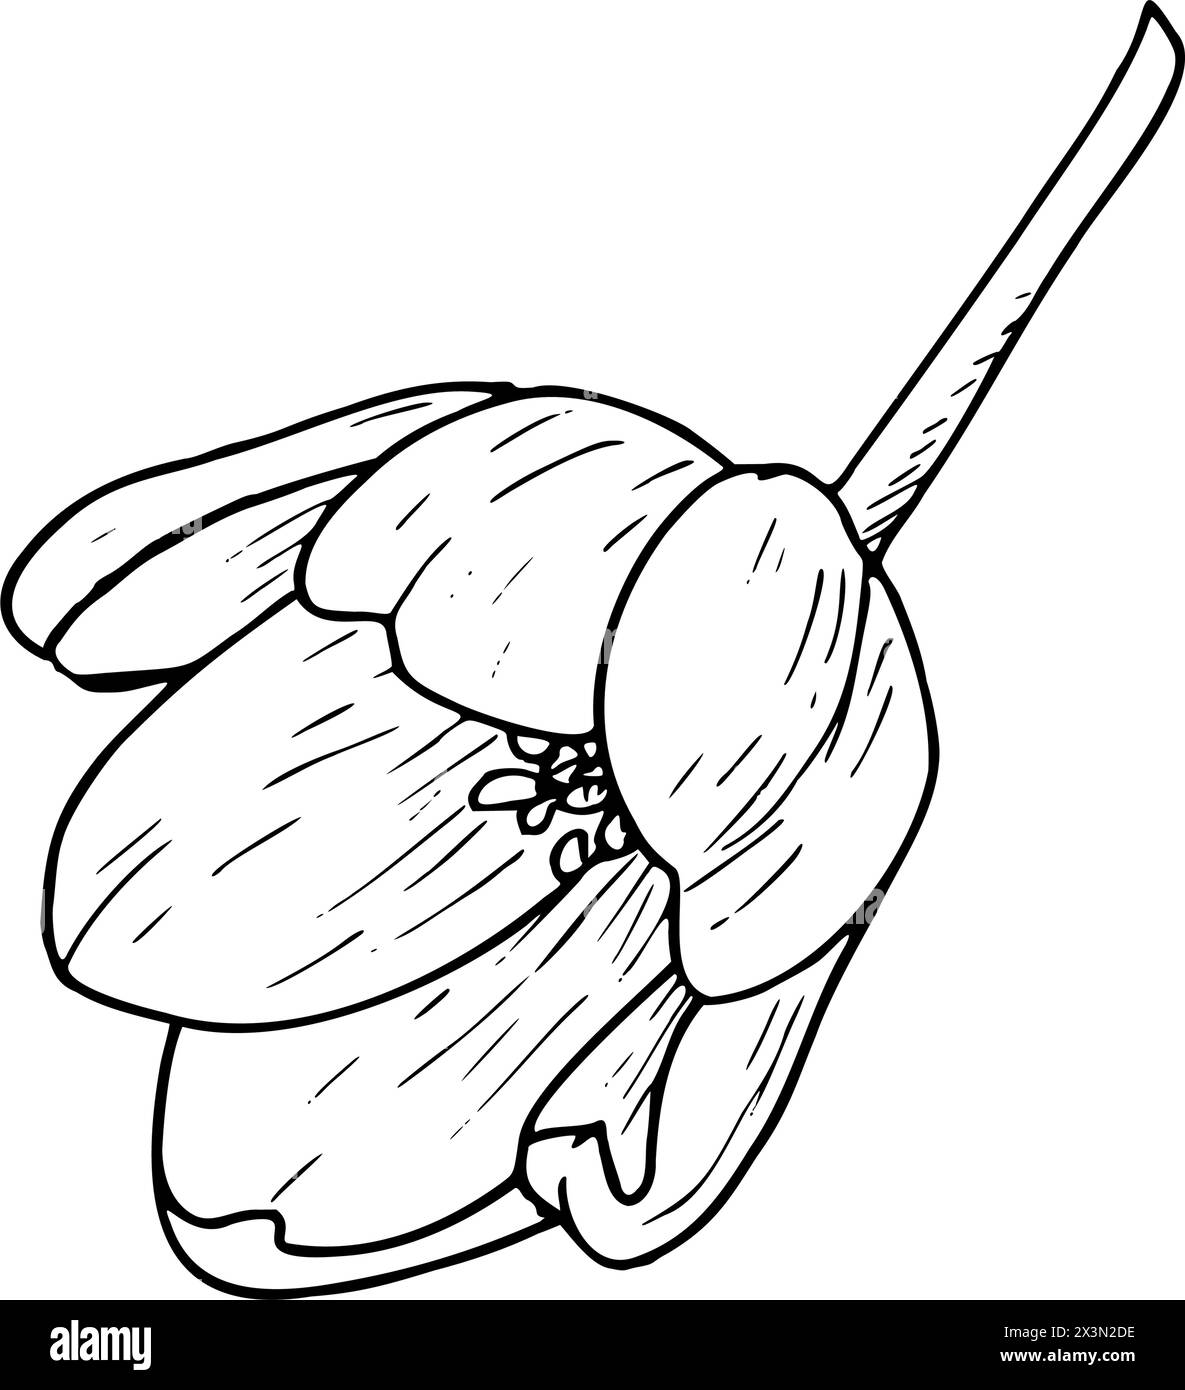 Illustration vectorielle de fleurs de tulipe. Schéma graphique de contour noir de l'ampoule à tête ouverte. Carte de voeux en fleurs botaniques. Contour de ligne d'encre contour de silhouette Illustration de Vecteur